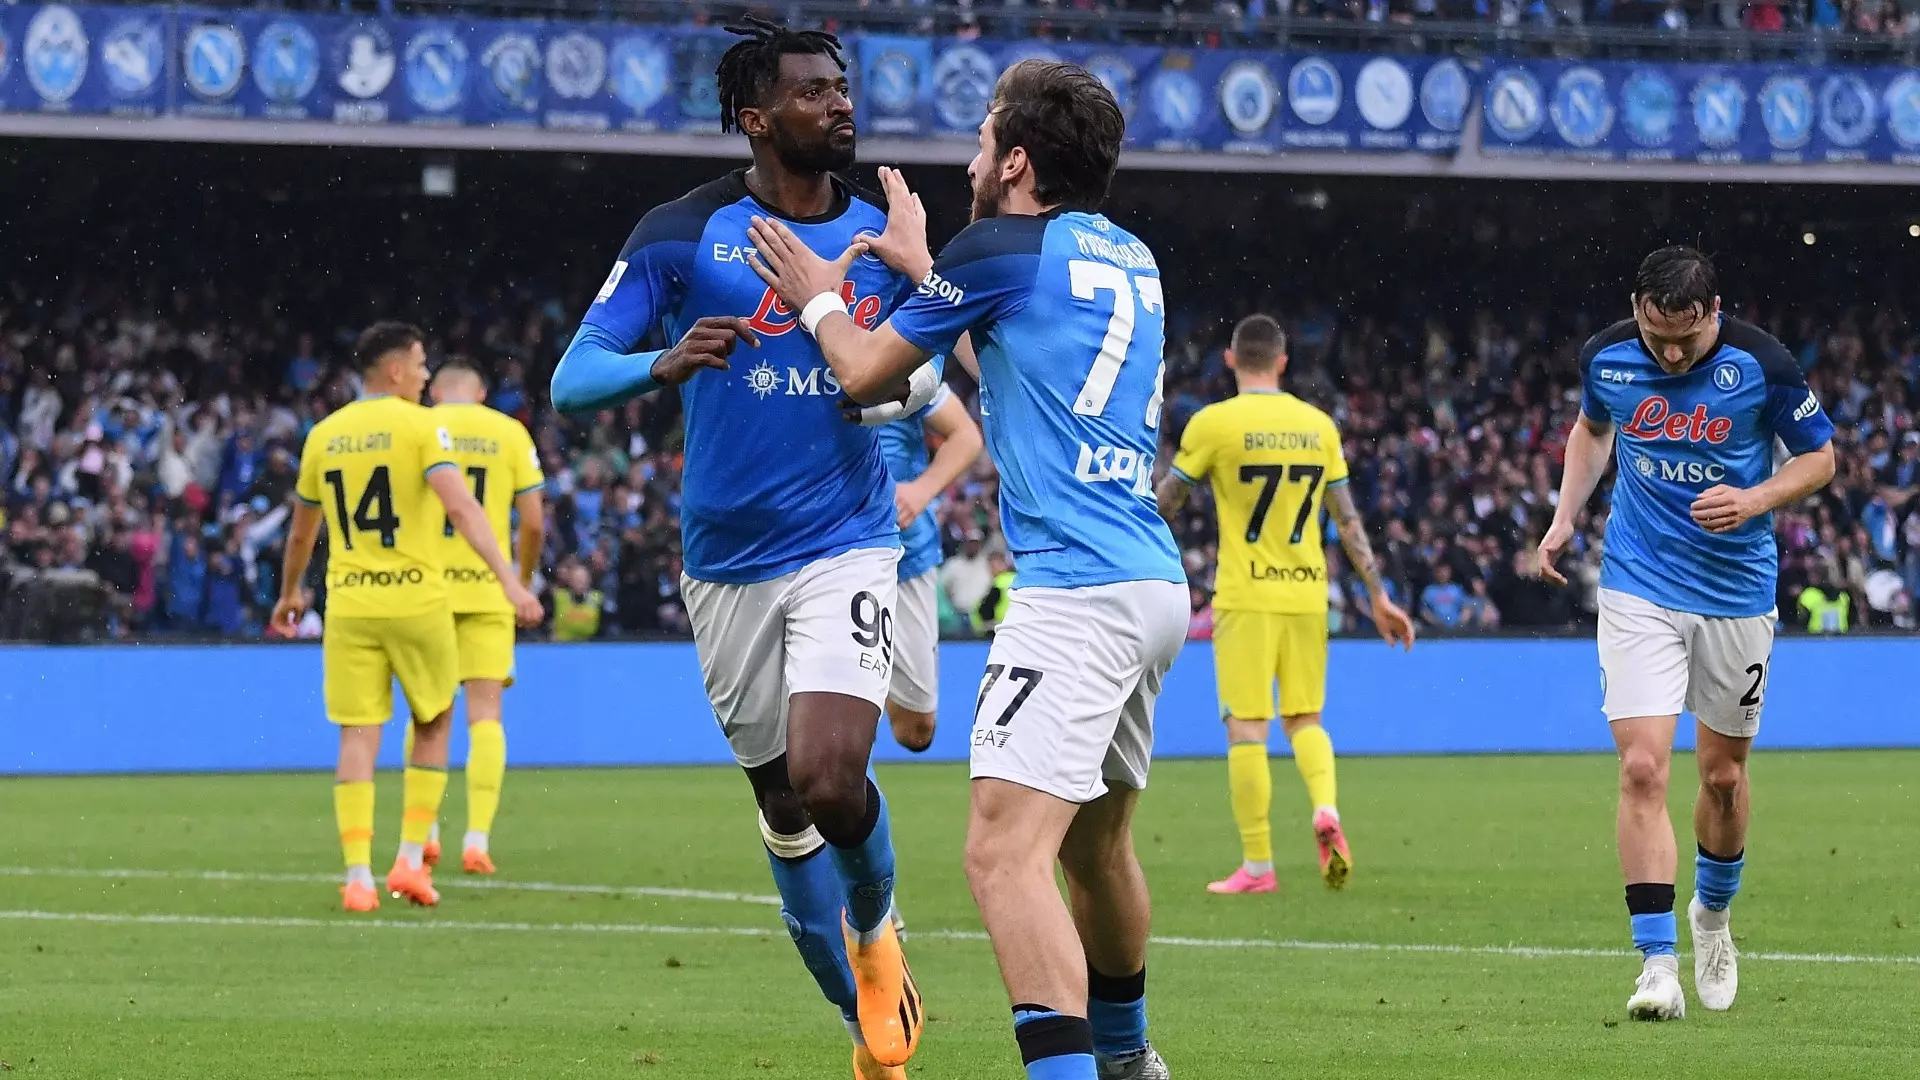 Napoli, la festa continua contro l’Inter: 3-1 al Maradona